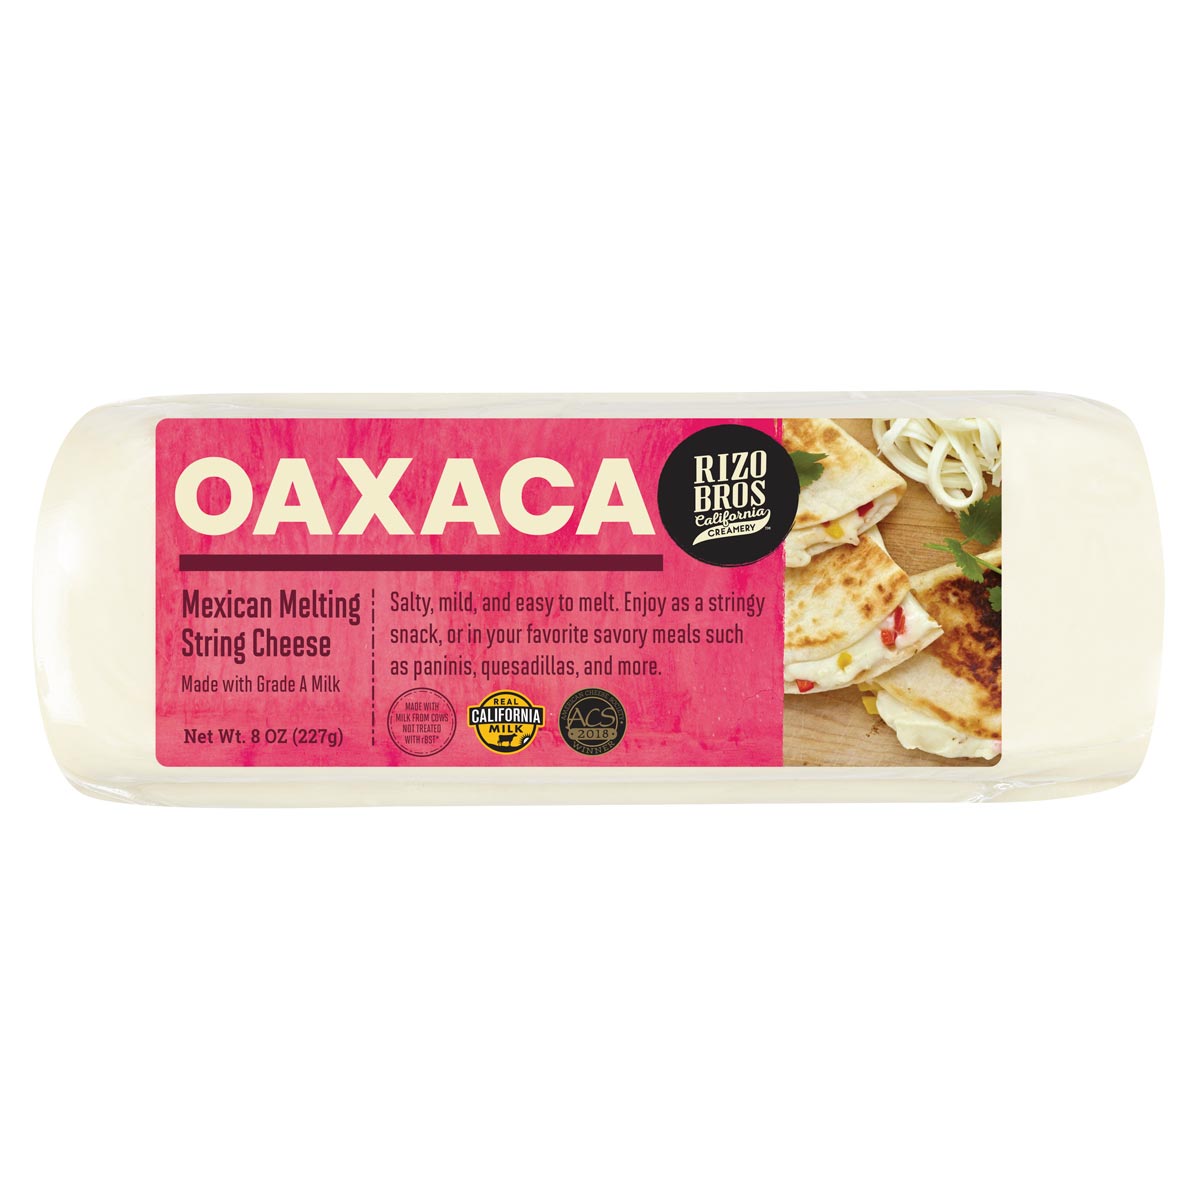 Queso Oaxaca Packaging